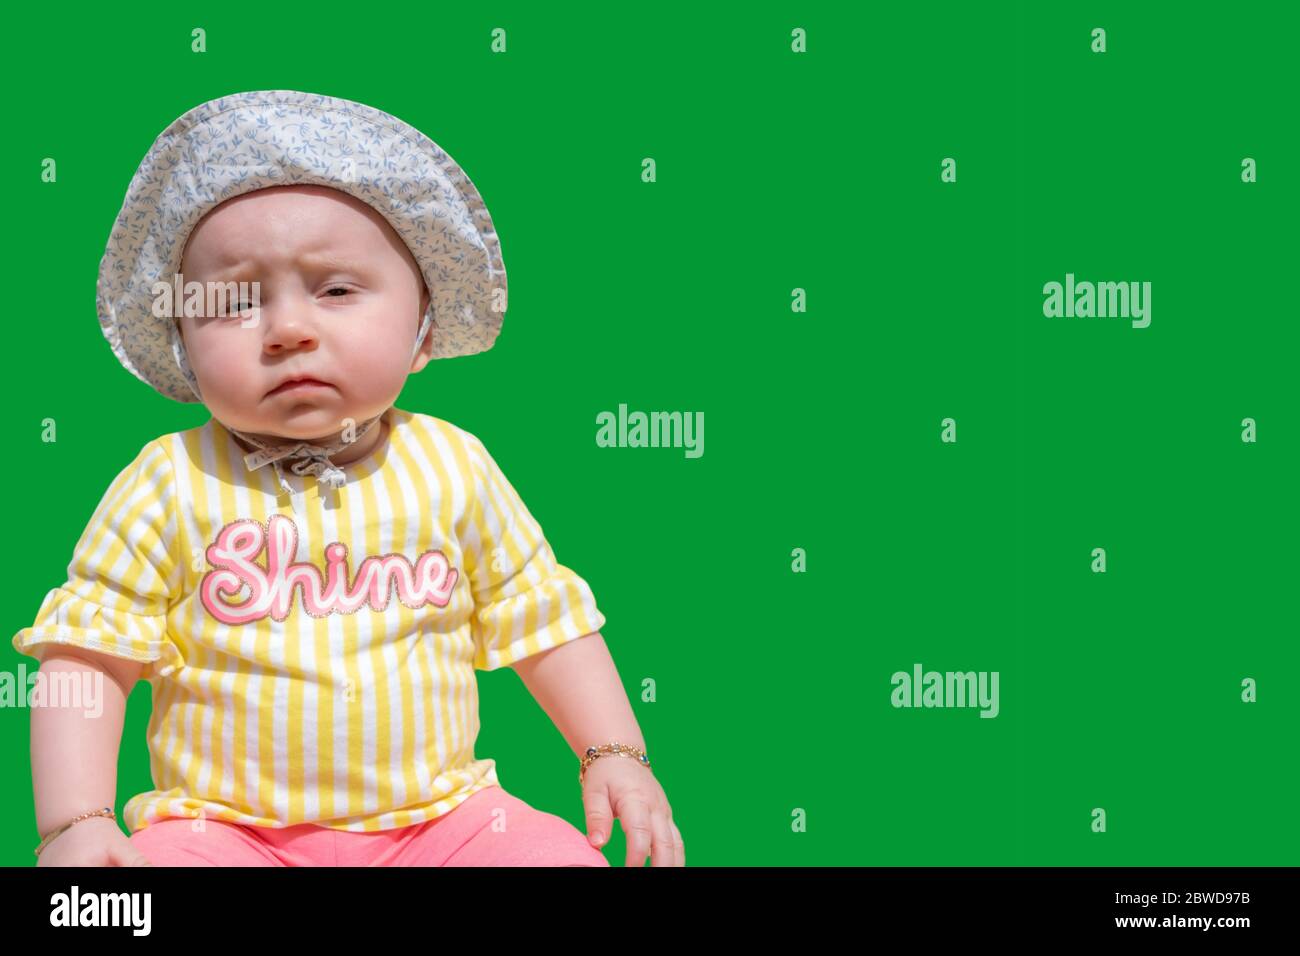 Cute baby girl indossare adorabile cappello guardando la macchina fotografica rendere divertenti volti su schermo verde con spazio di testo Foto Stock